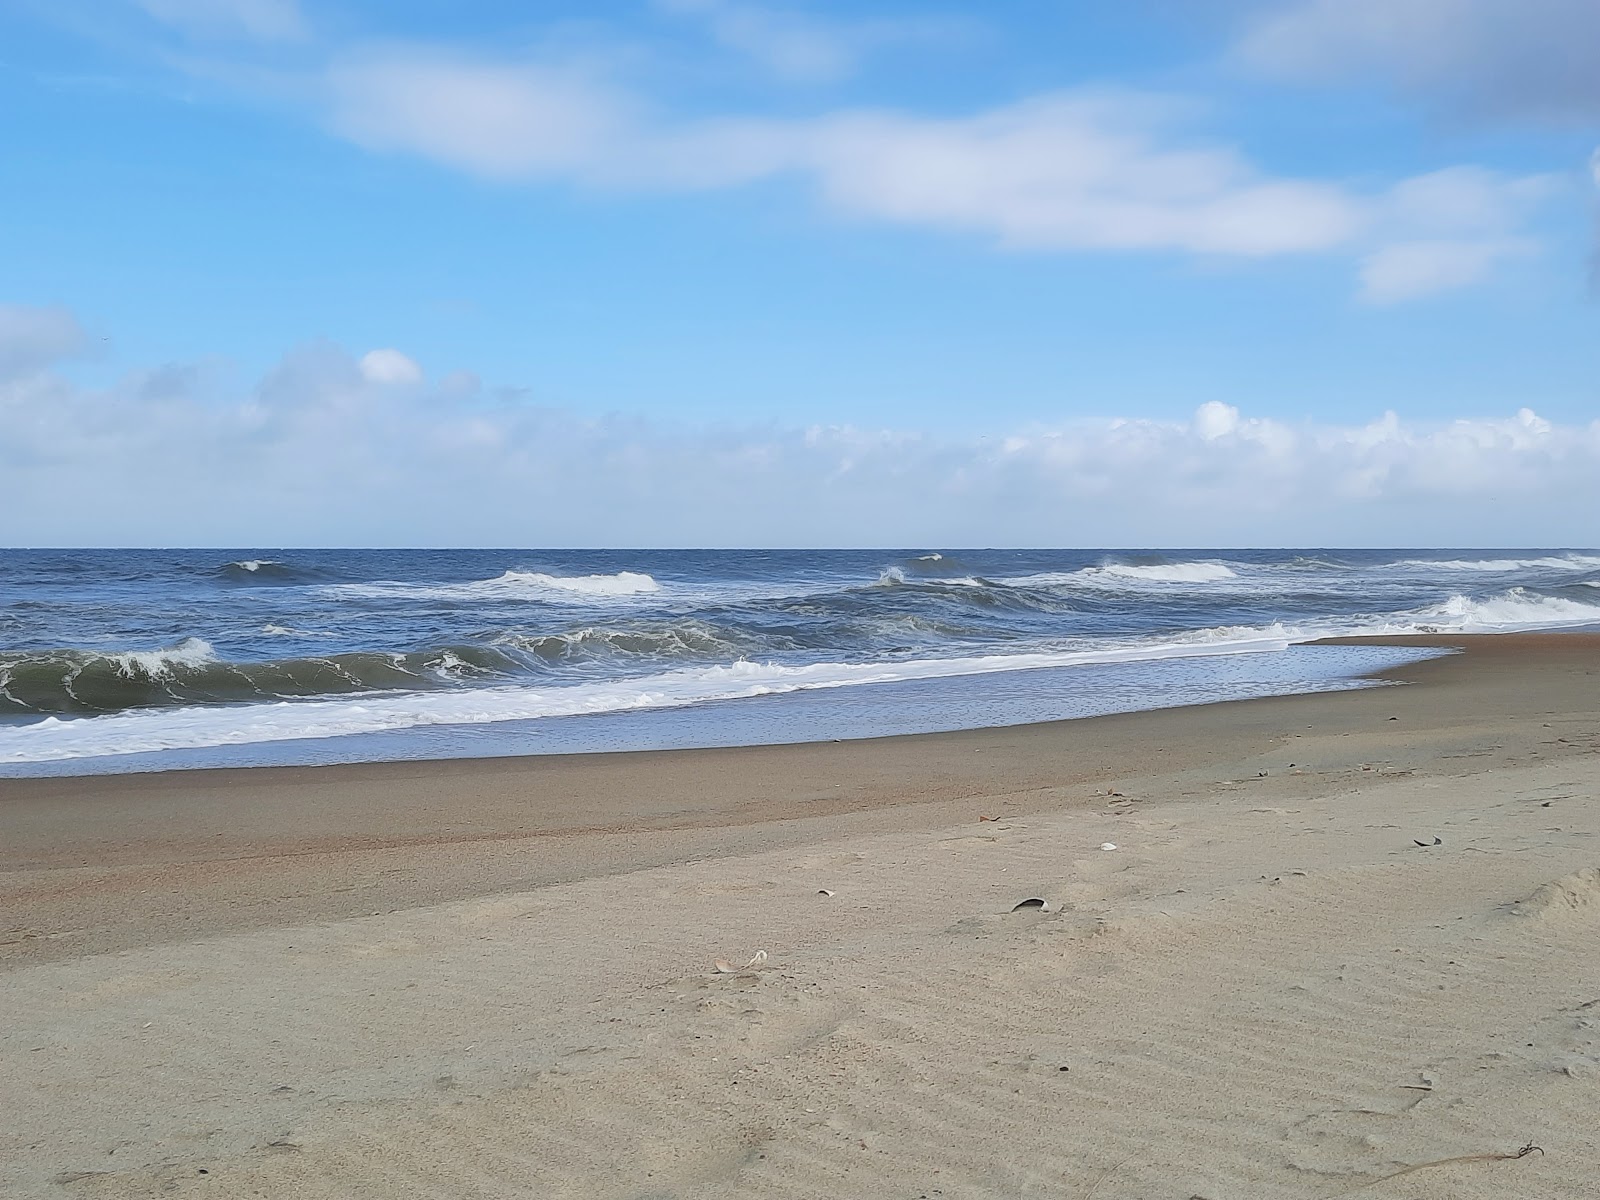 Foto von Cape Hatteras beach befindet sich in natürlicher umgebung